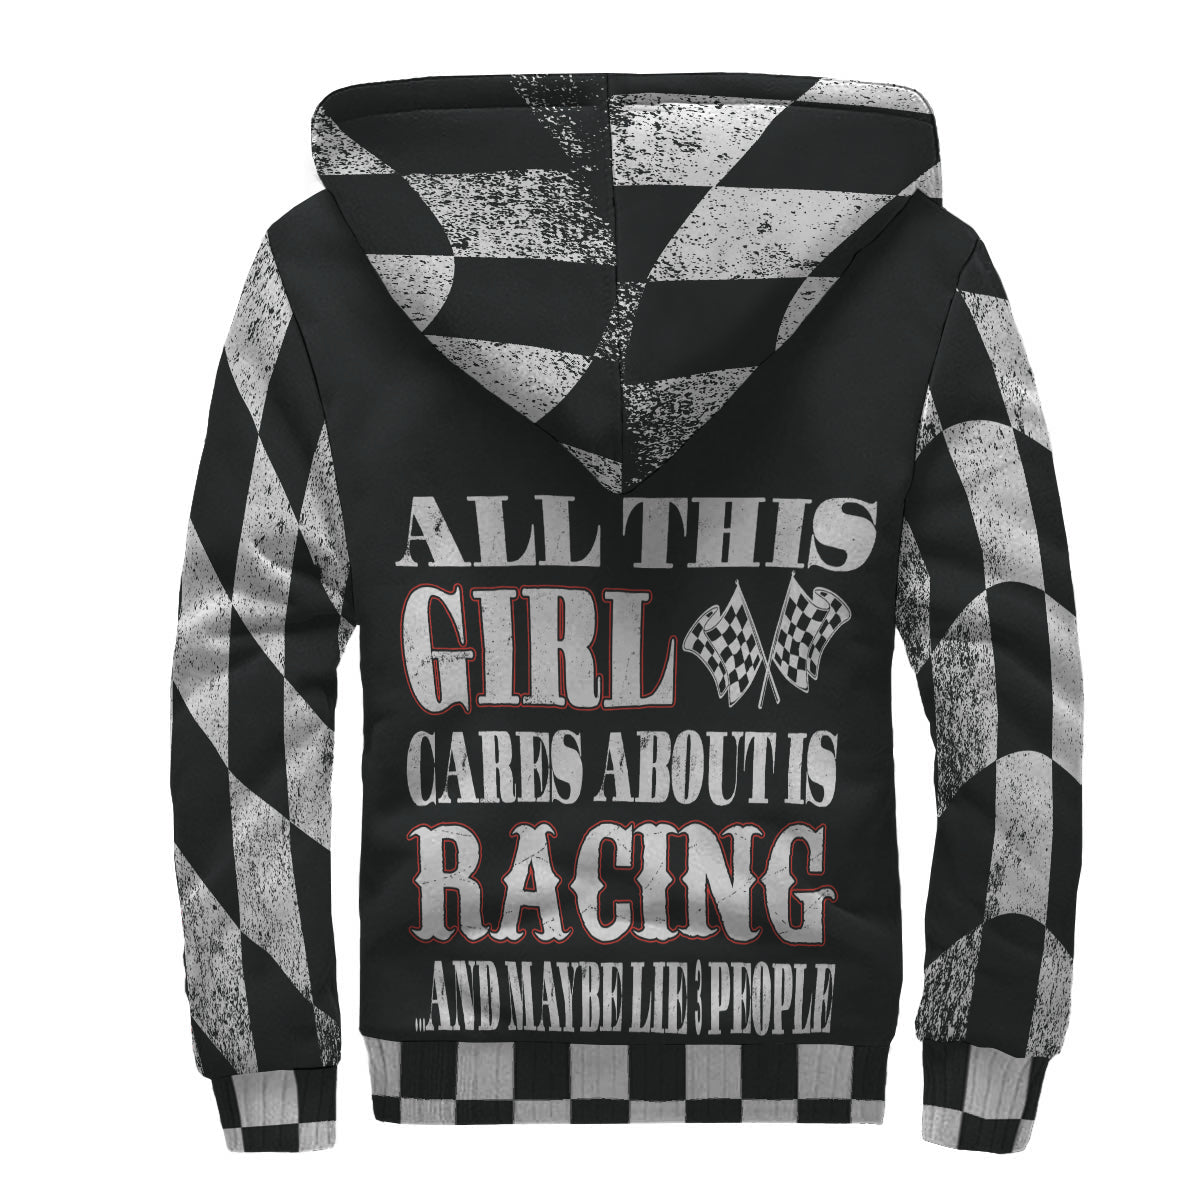 Racing girl jacket